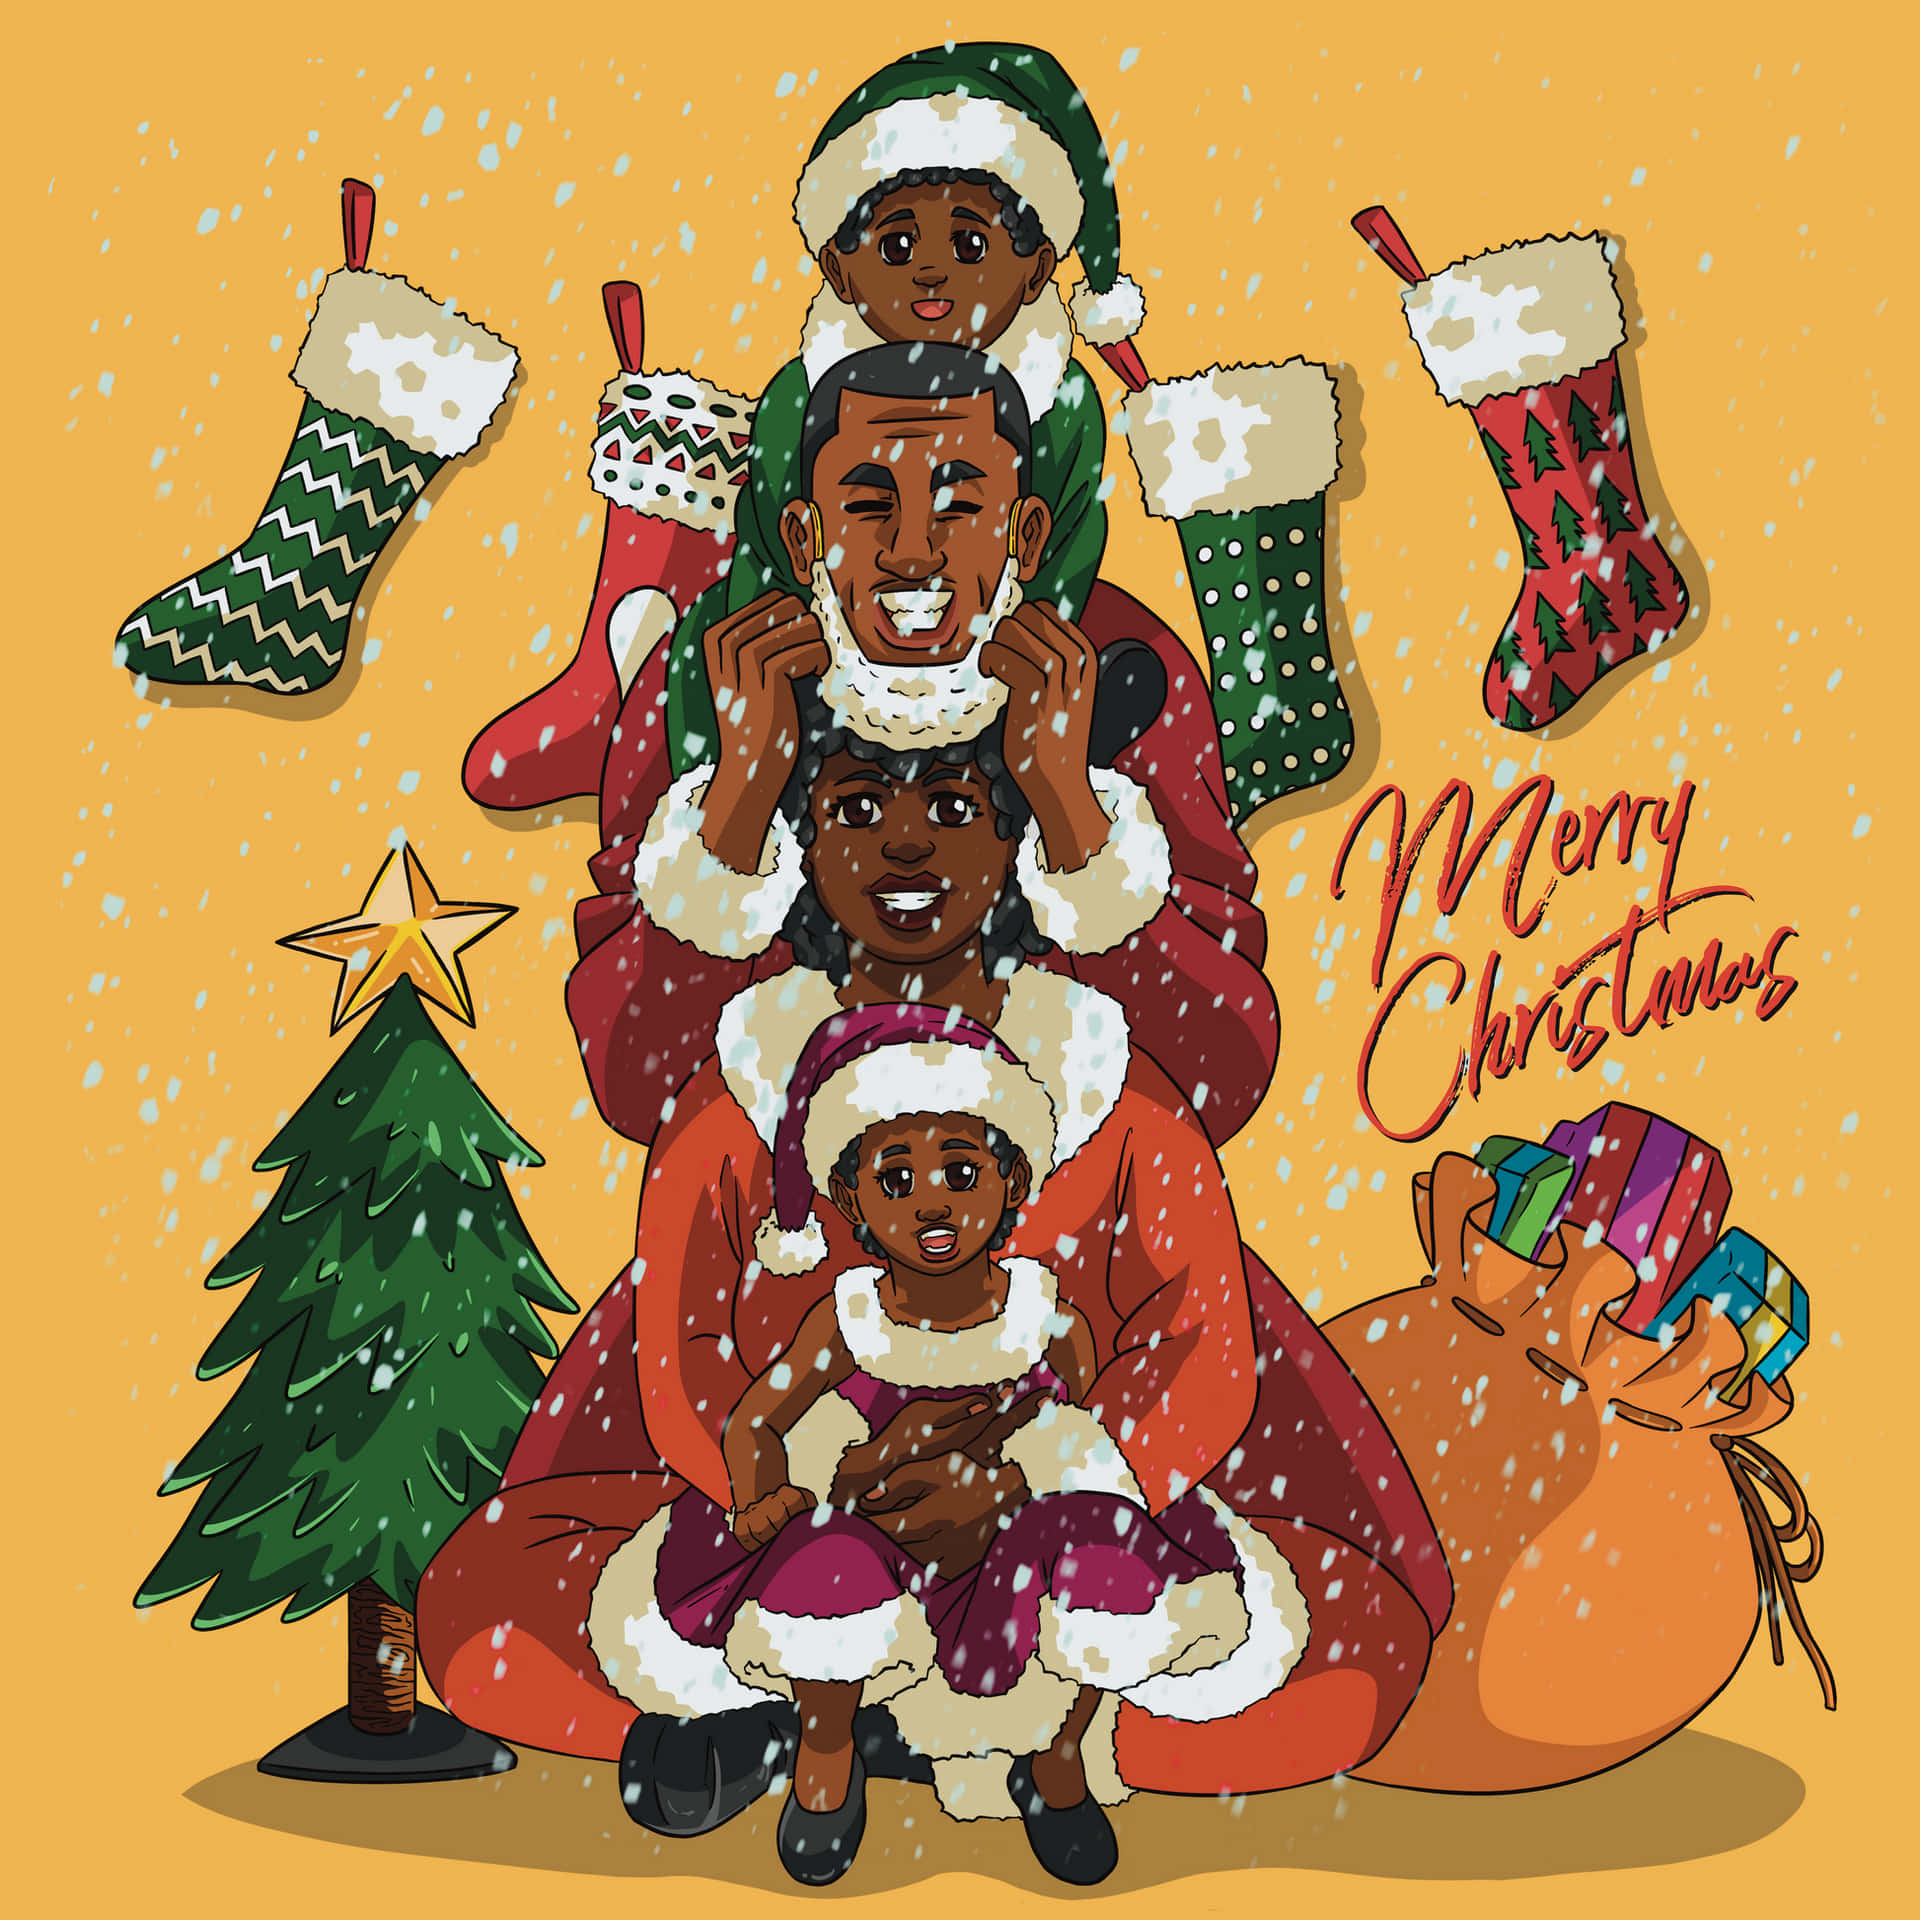 Imagende Arte Digital De Una Familia Negra En Navidad